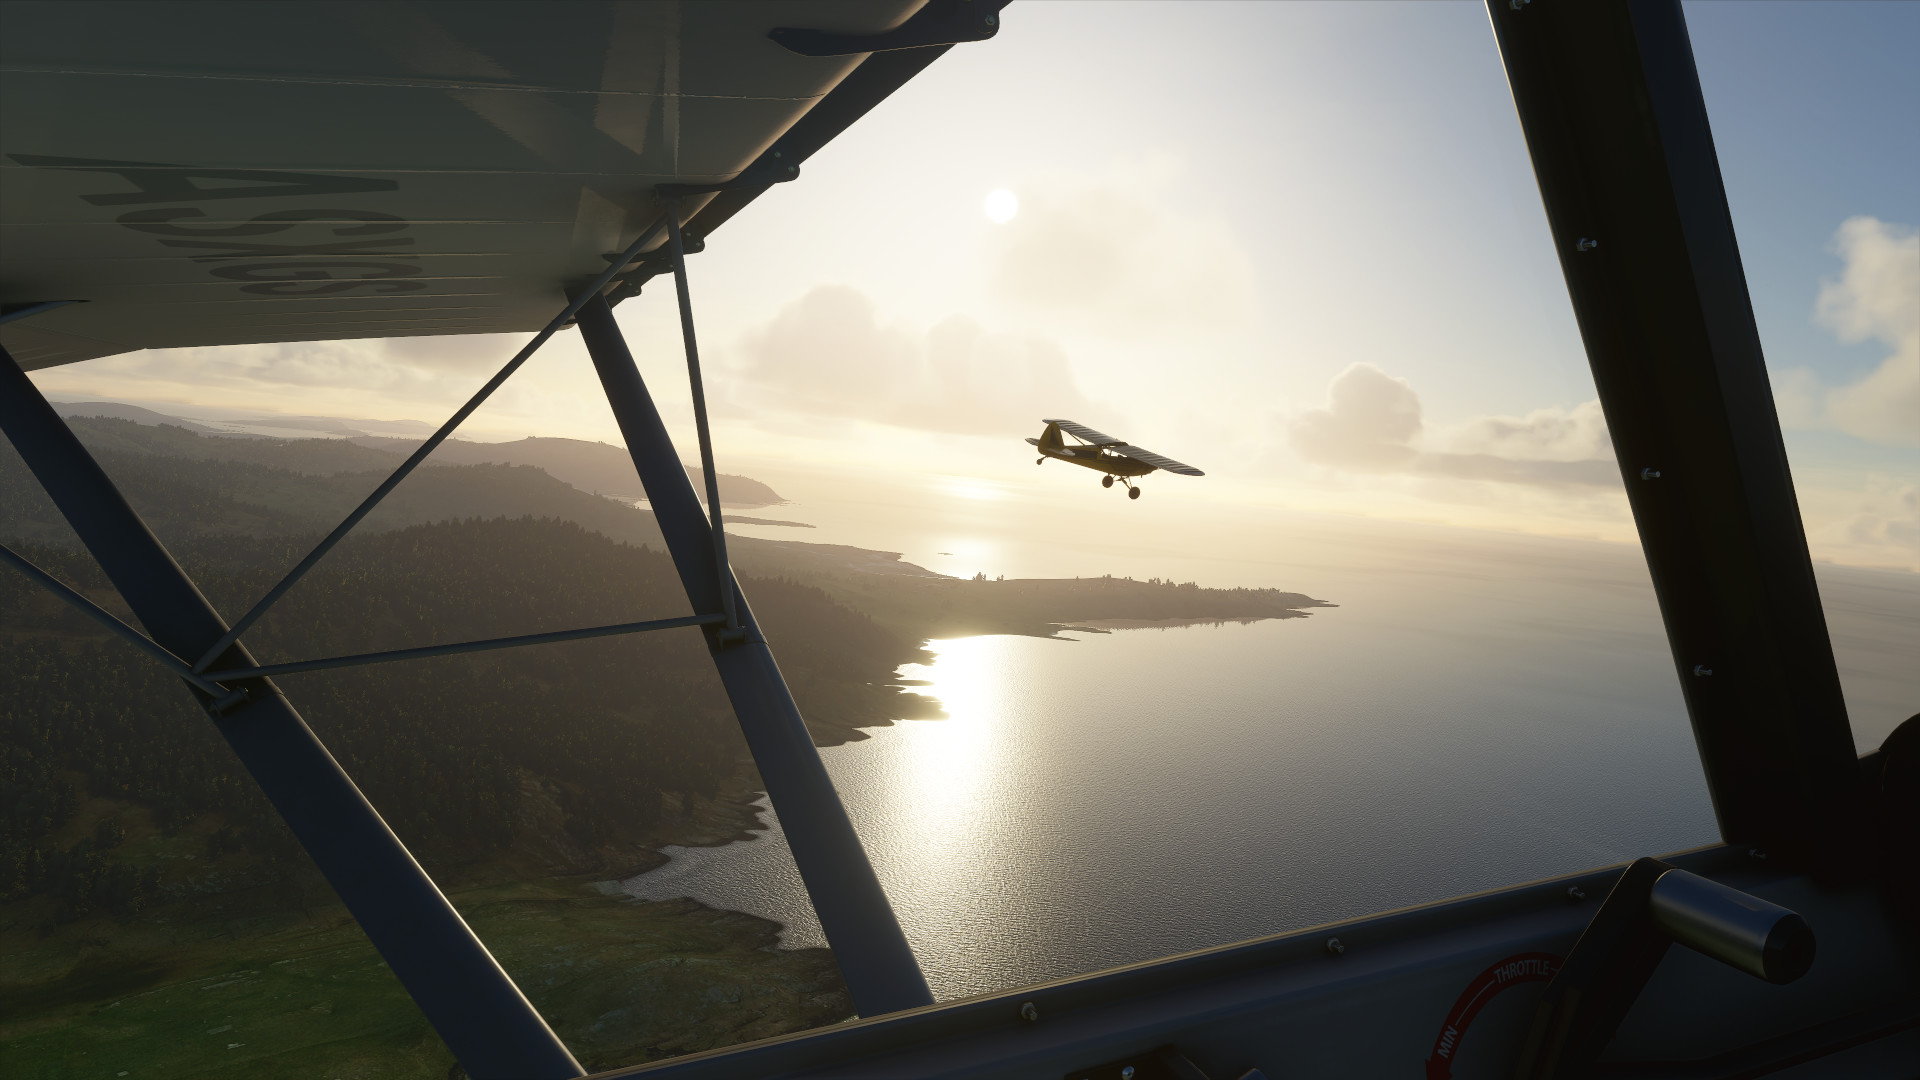 Flight Simulator Install Size  Bing fuels Flight Simulator's